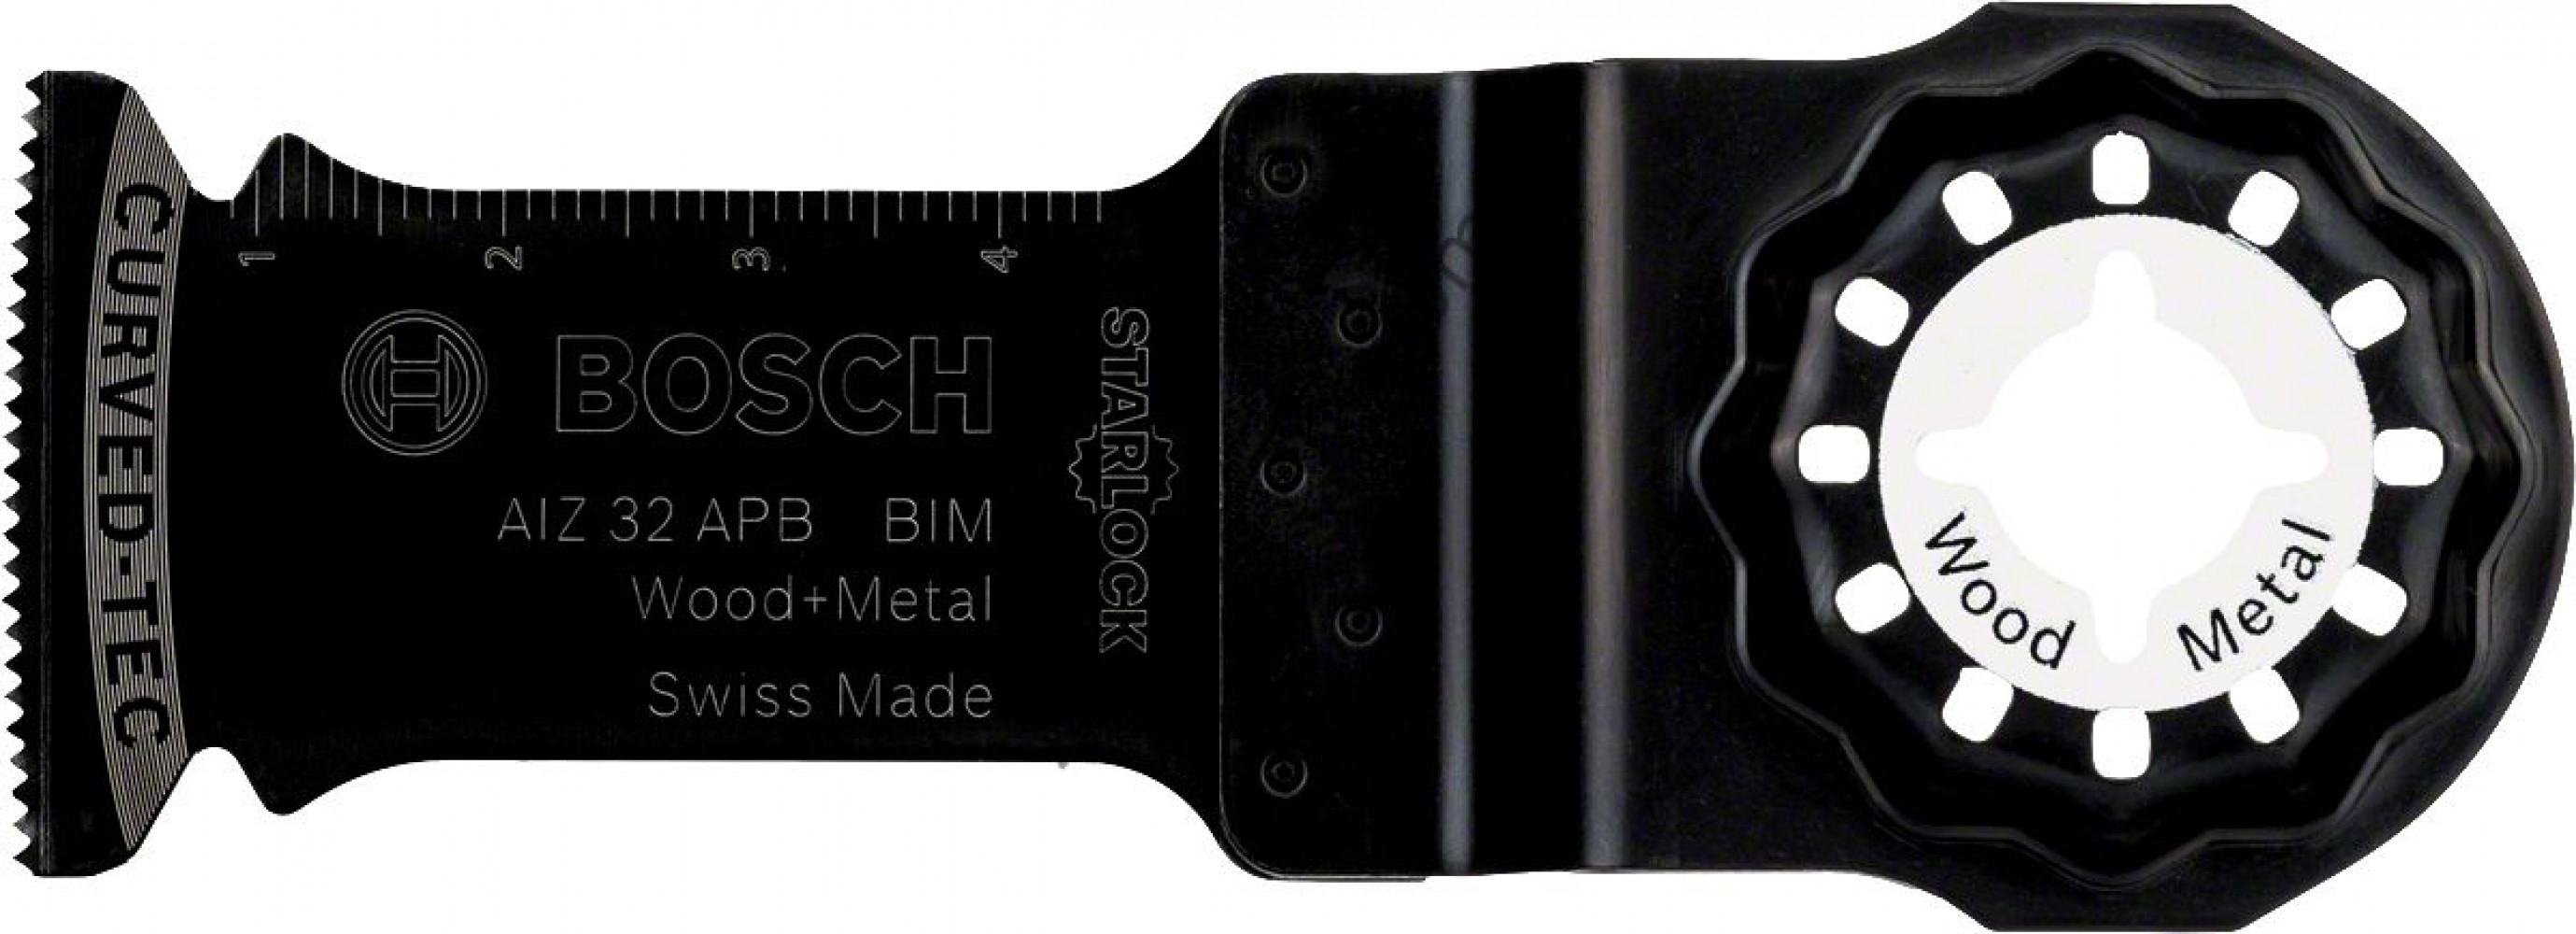 Bosch - Starlock - AIZ 32 APB - BIM Ahşap ve Metal İçin Daldırmalı Testere Bıçağı